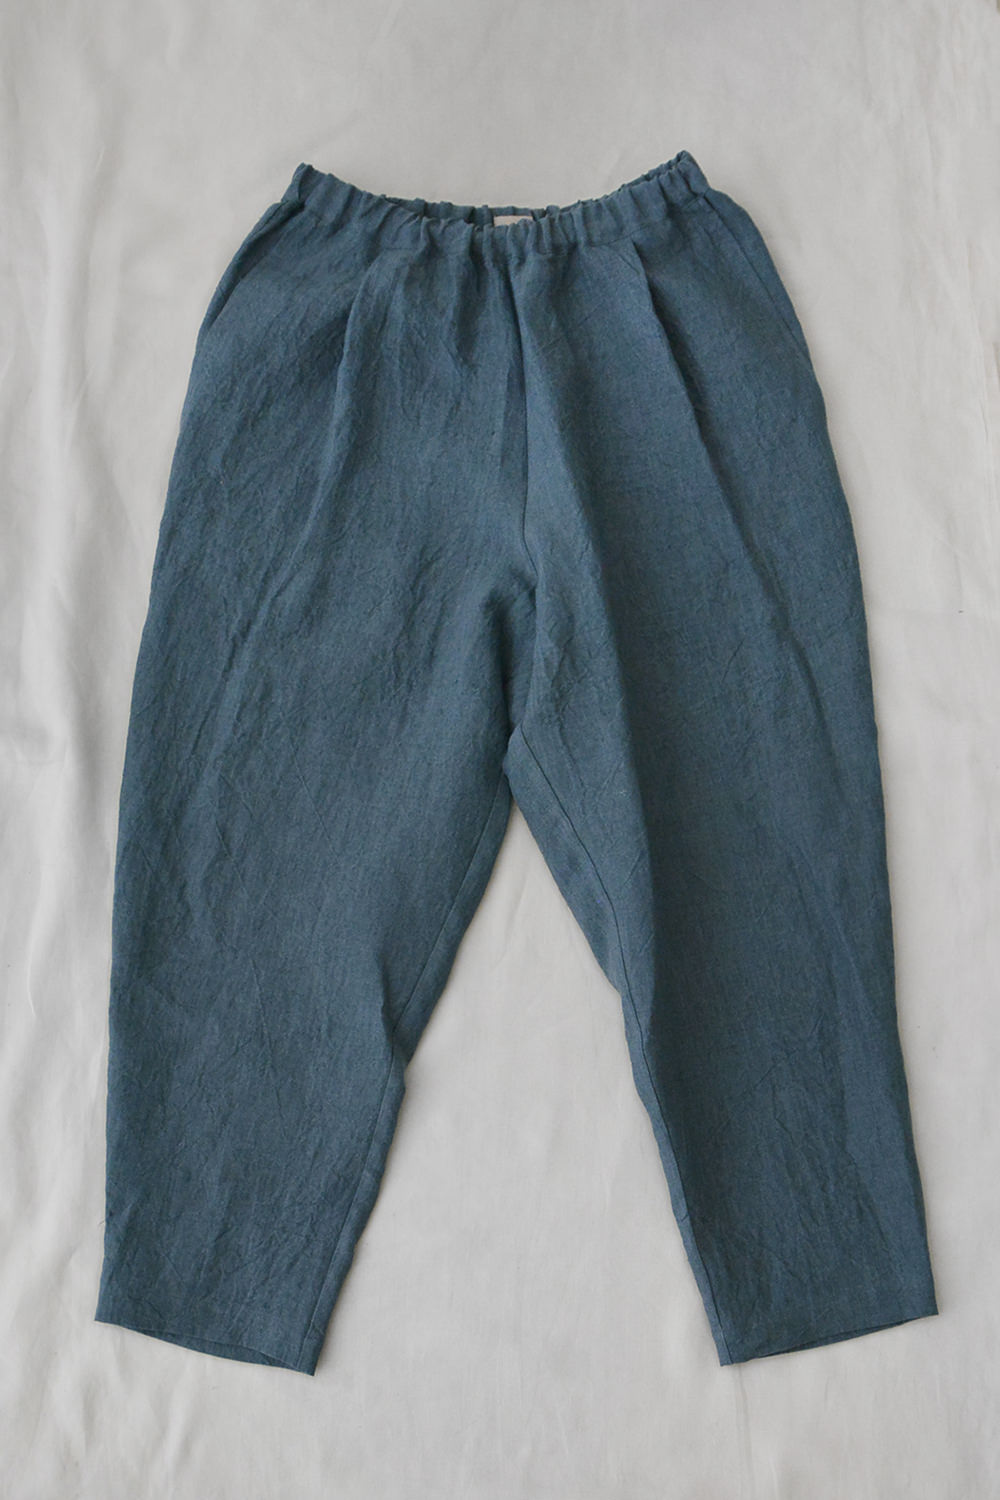 Linen Pants Luna - Slate Blue Top Picture